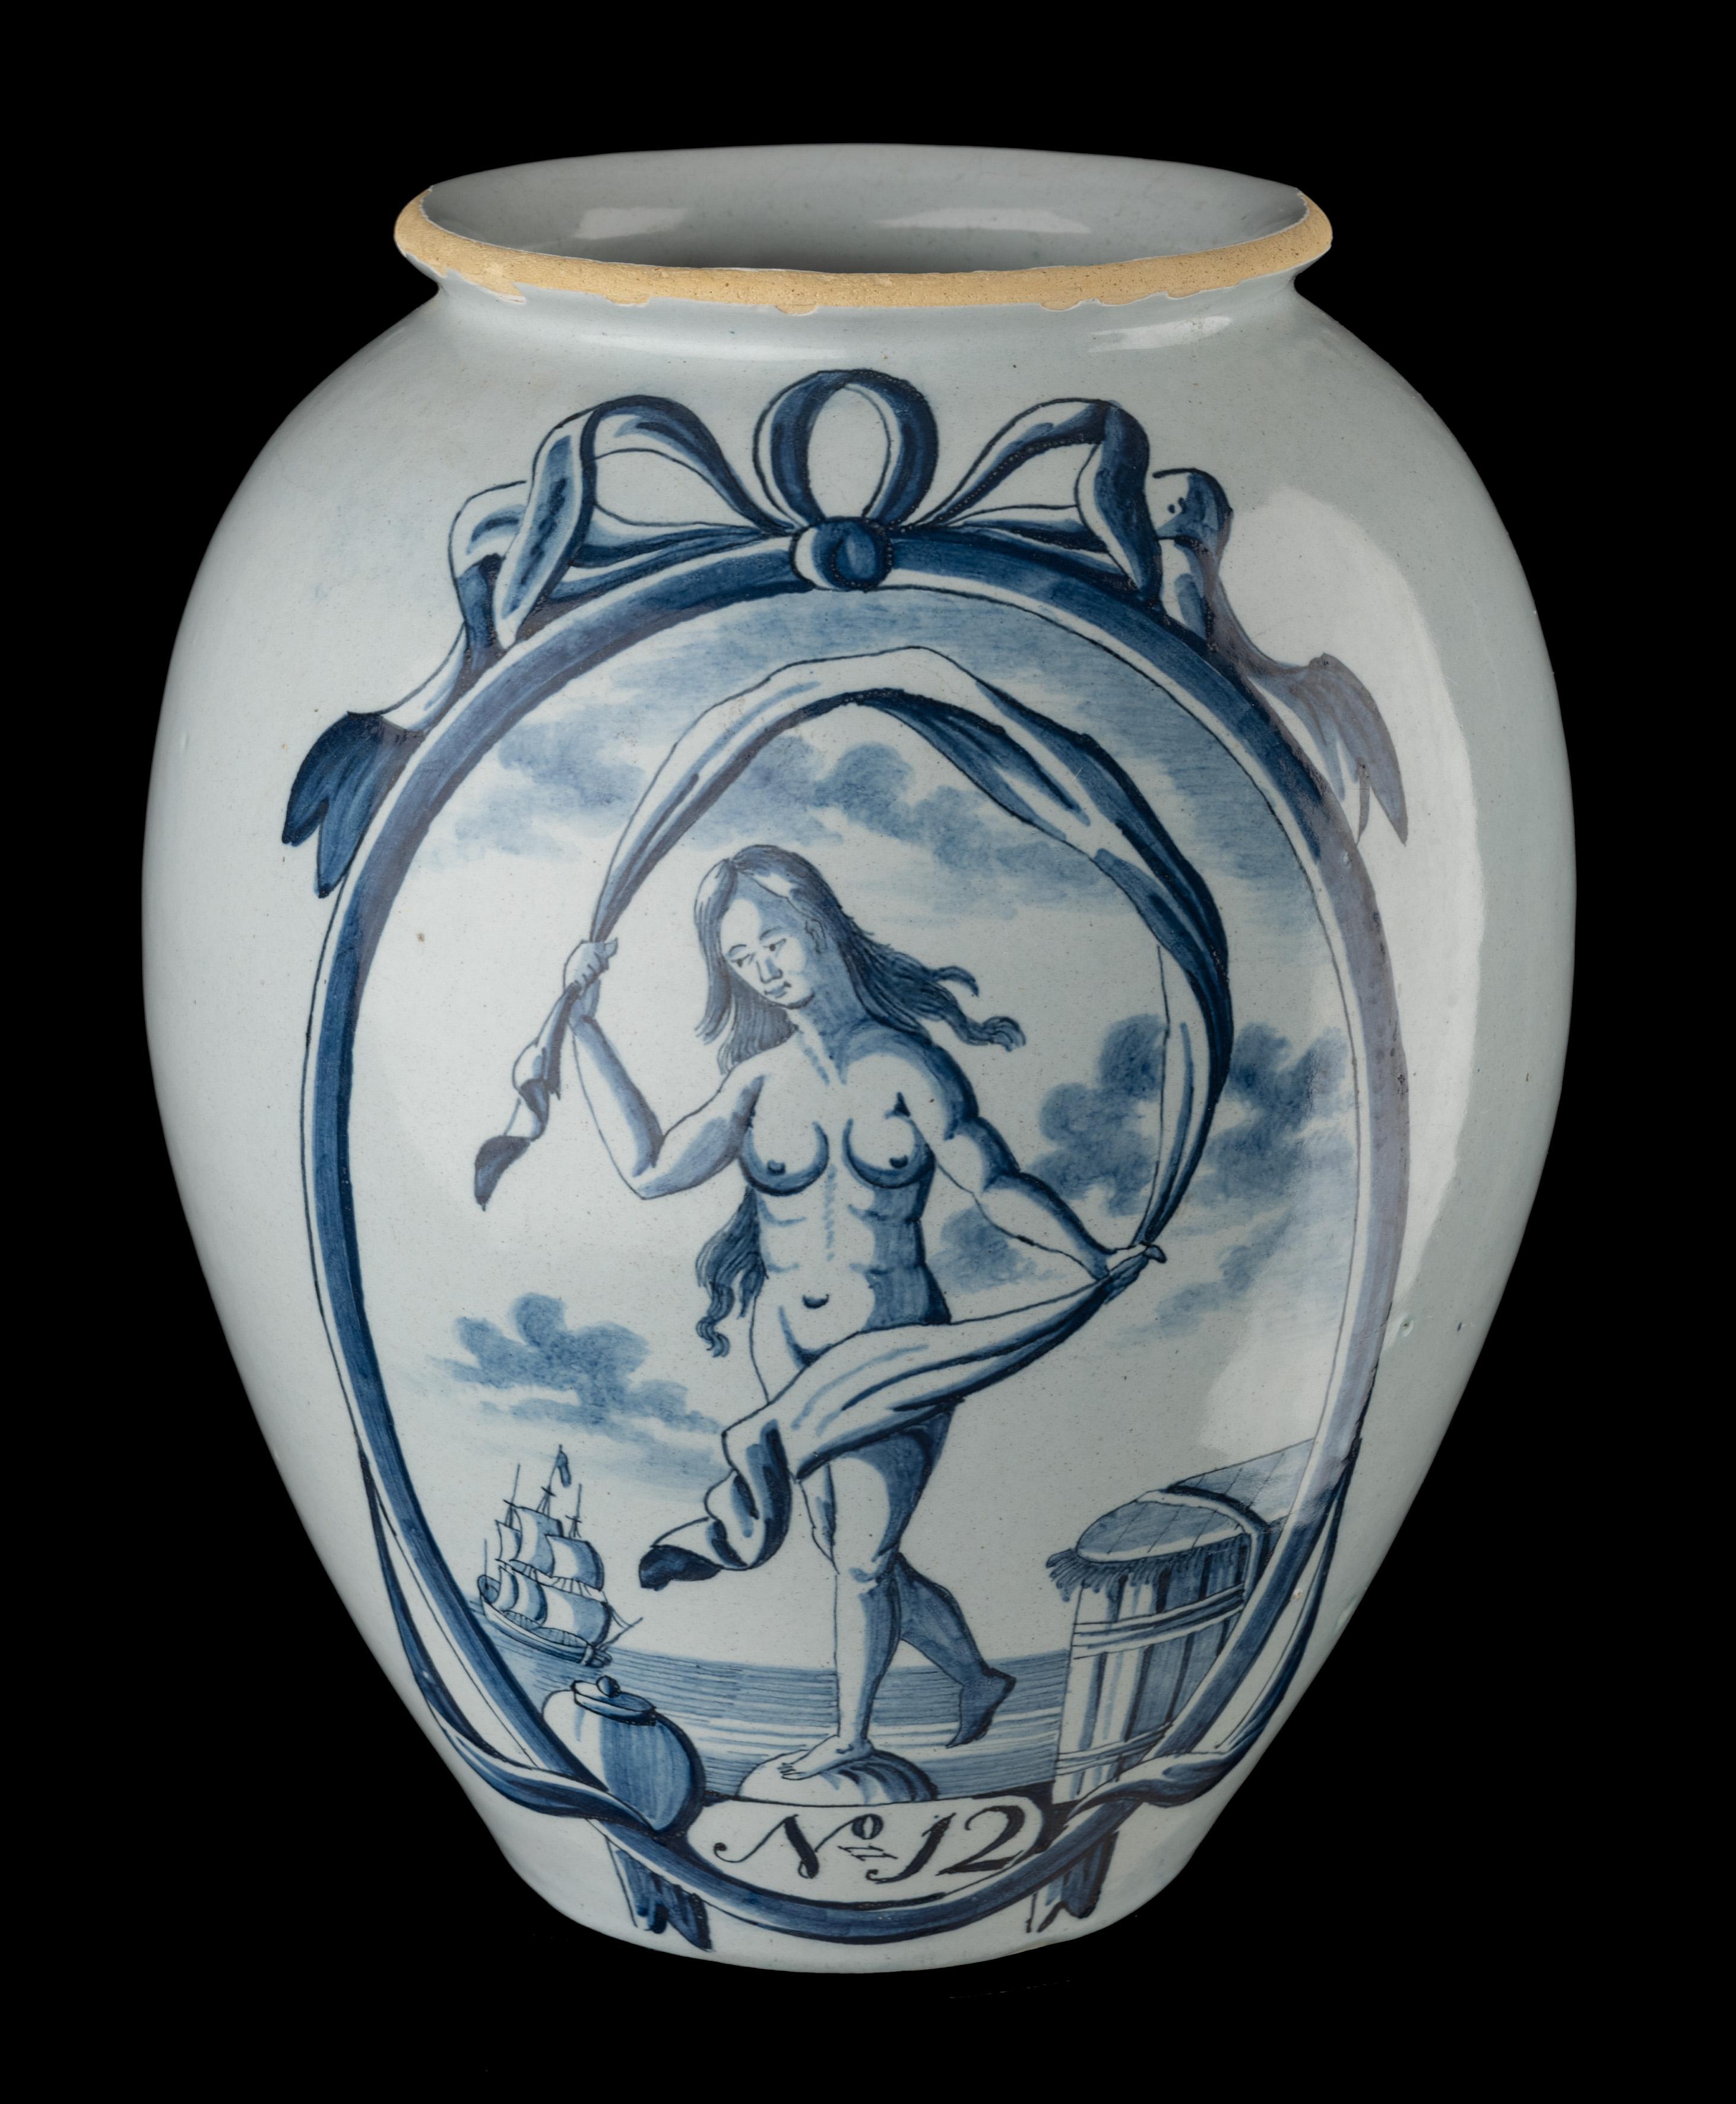 Blau-weißer Tabakkrug 'Nr. 12' Delft, 1750-1800 
Der Lampetkrug Töpferei Marke: LPKan 

Die eiförmige Tabakdose hat einen vorspringenden Rand und ist blau bemalt mit einem großen Oval, das Fortuna darstellt. Zu ihrer Linken steht ein Tabakglas,